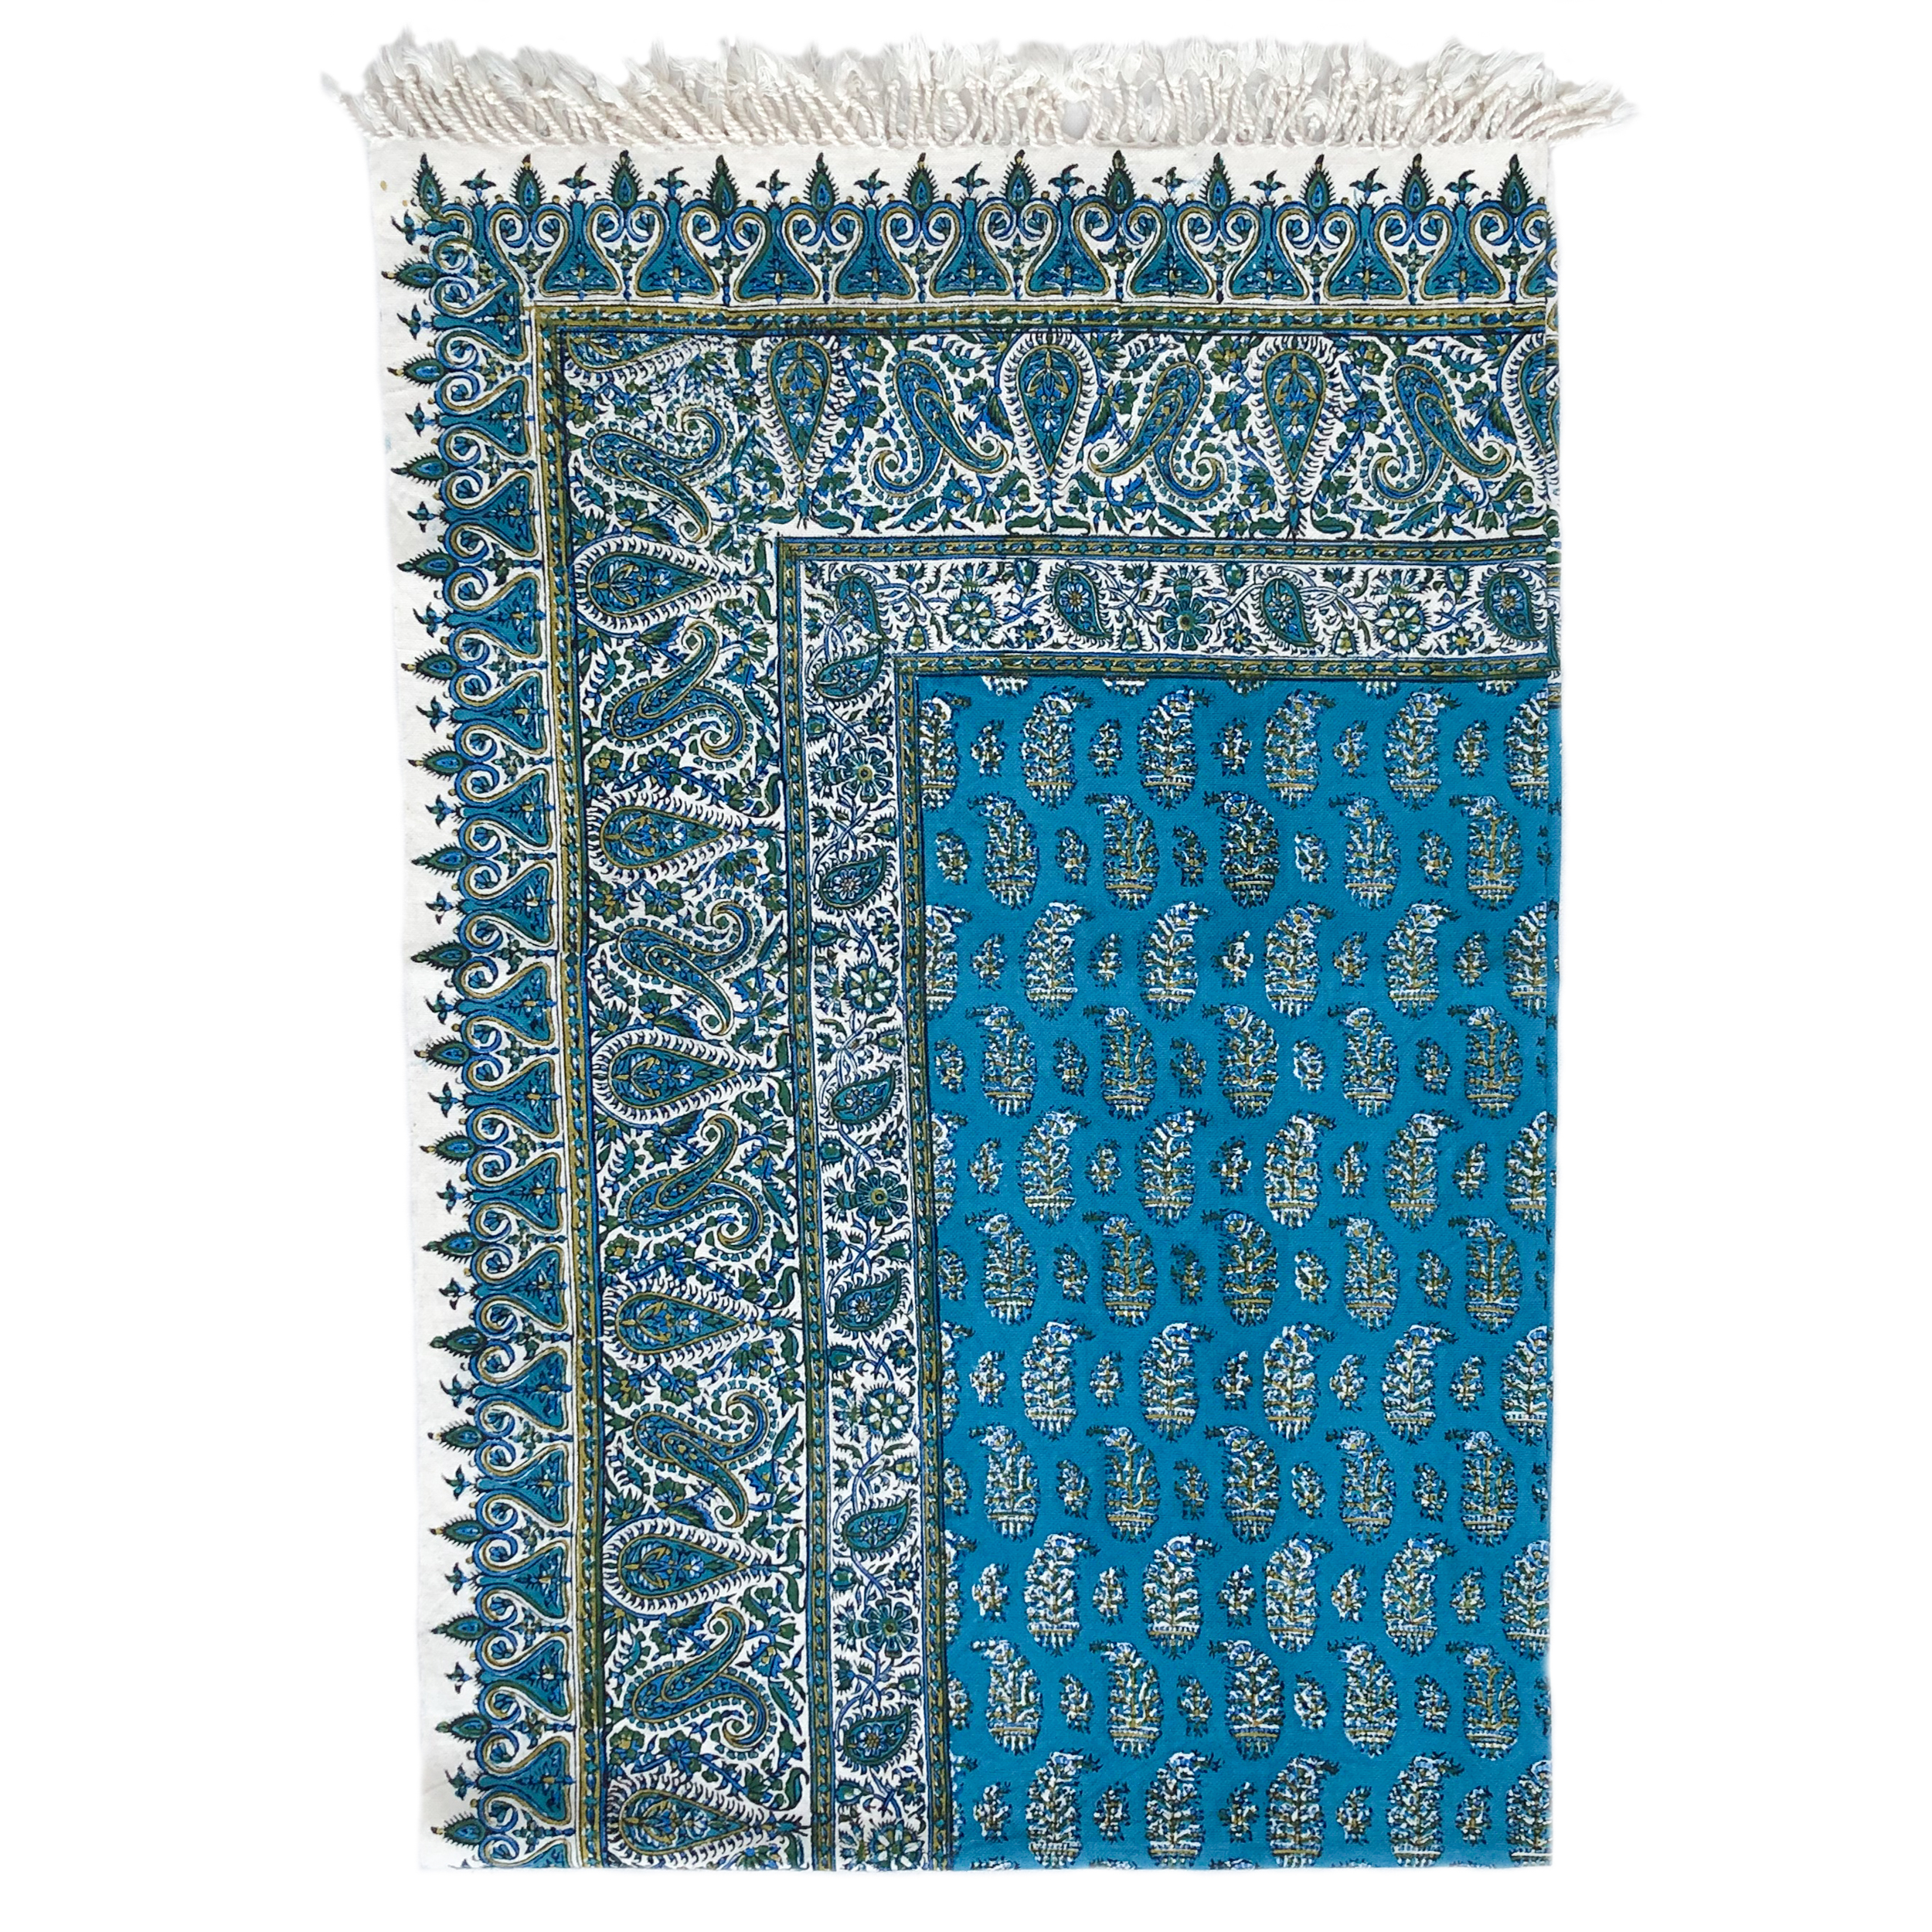 رومیزی قلمكار ممتاز اصفهان اثر عطريان طرح بته جقه مدل G169 سايز 150 * 100 سانتي متر